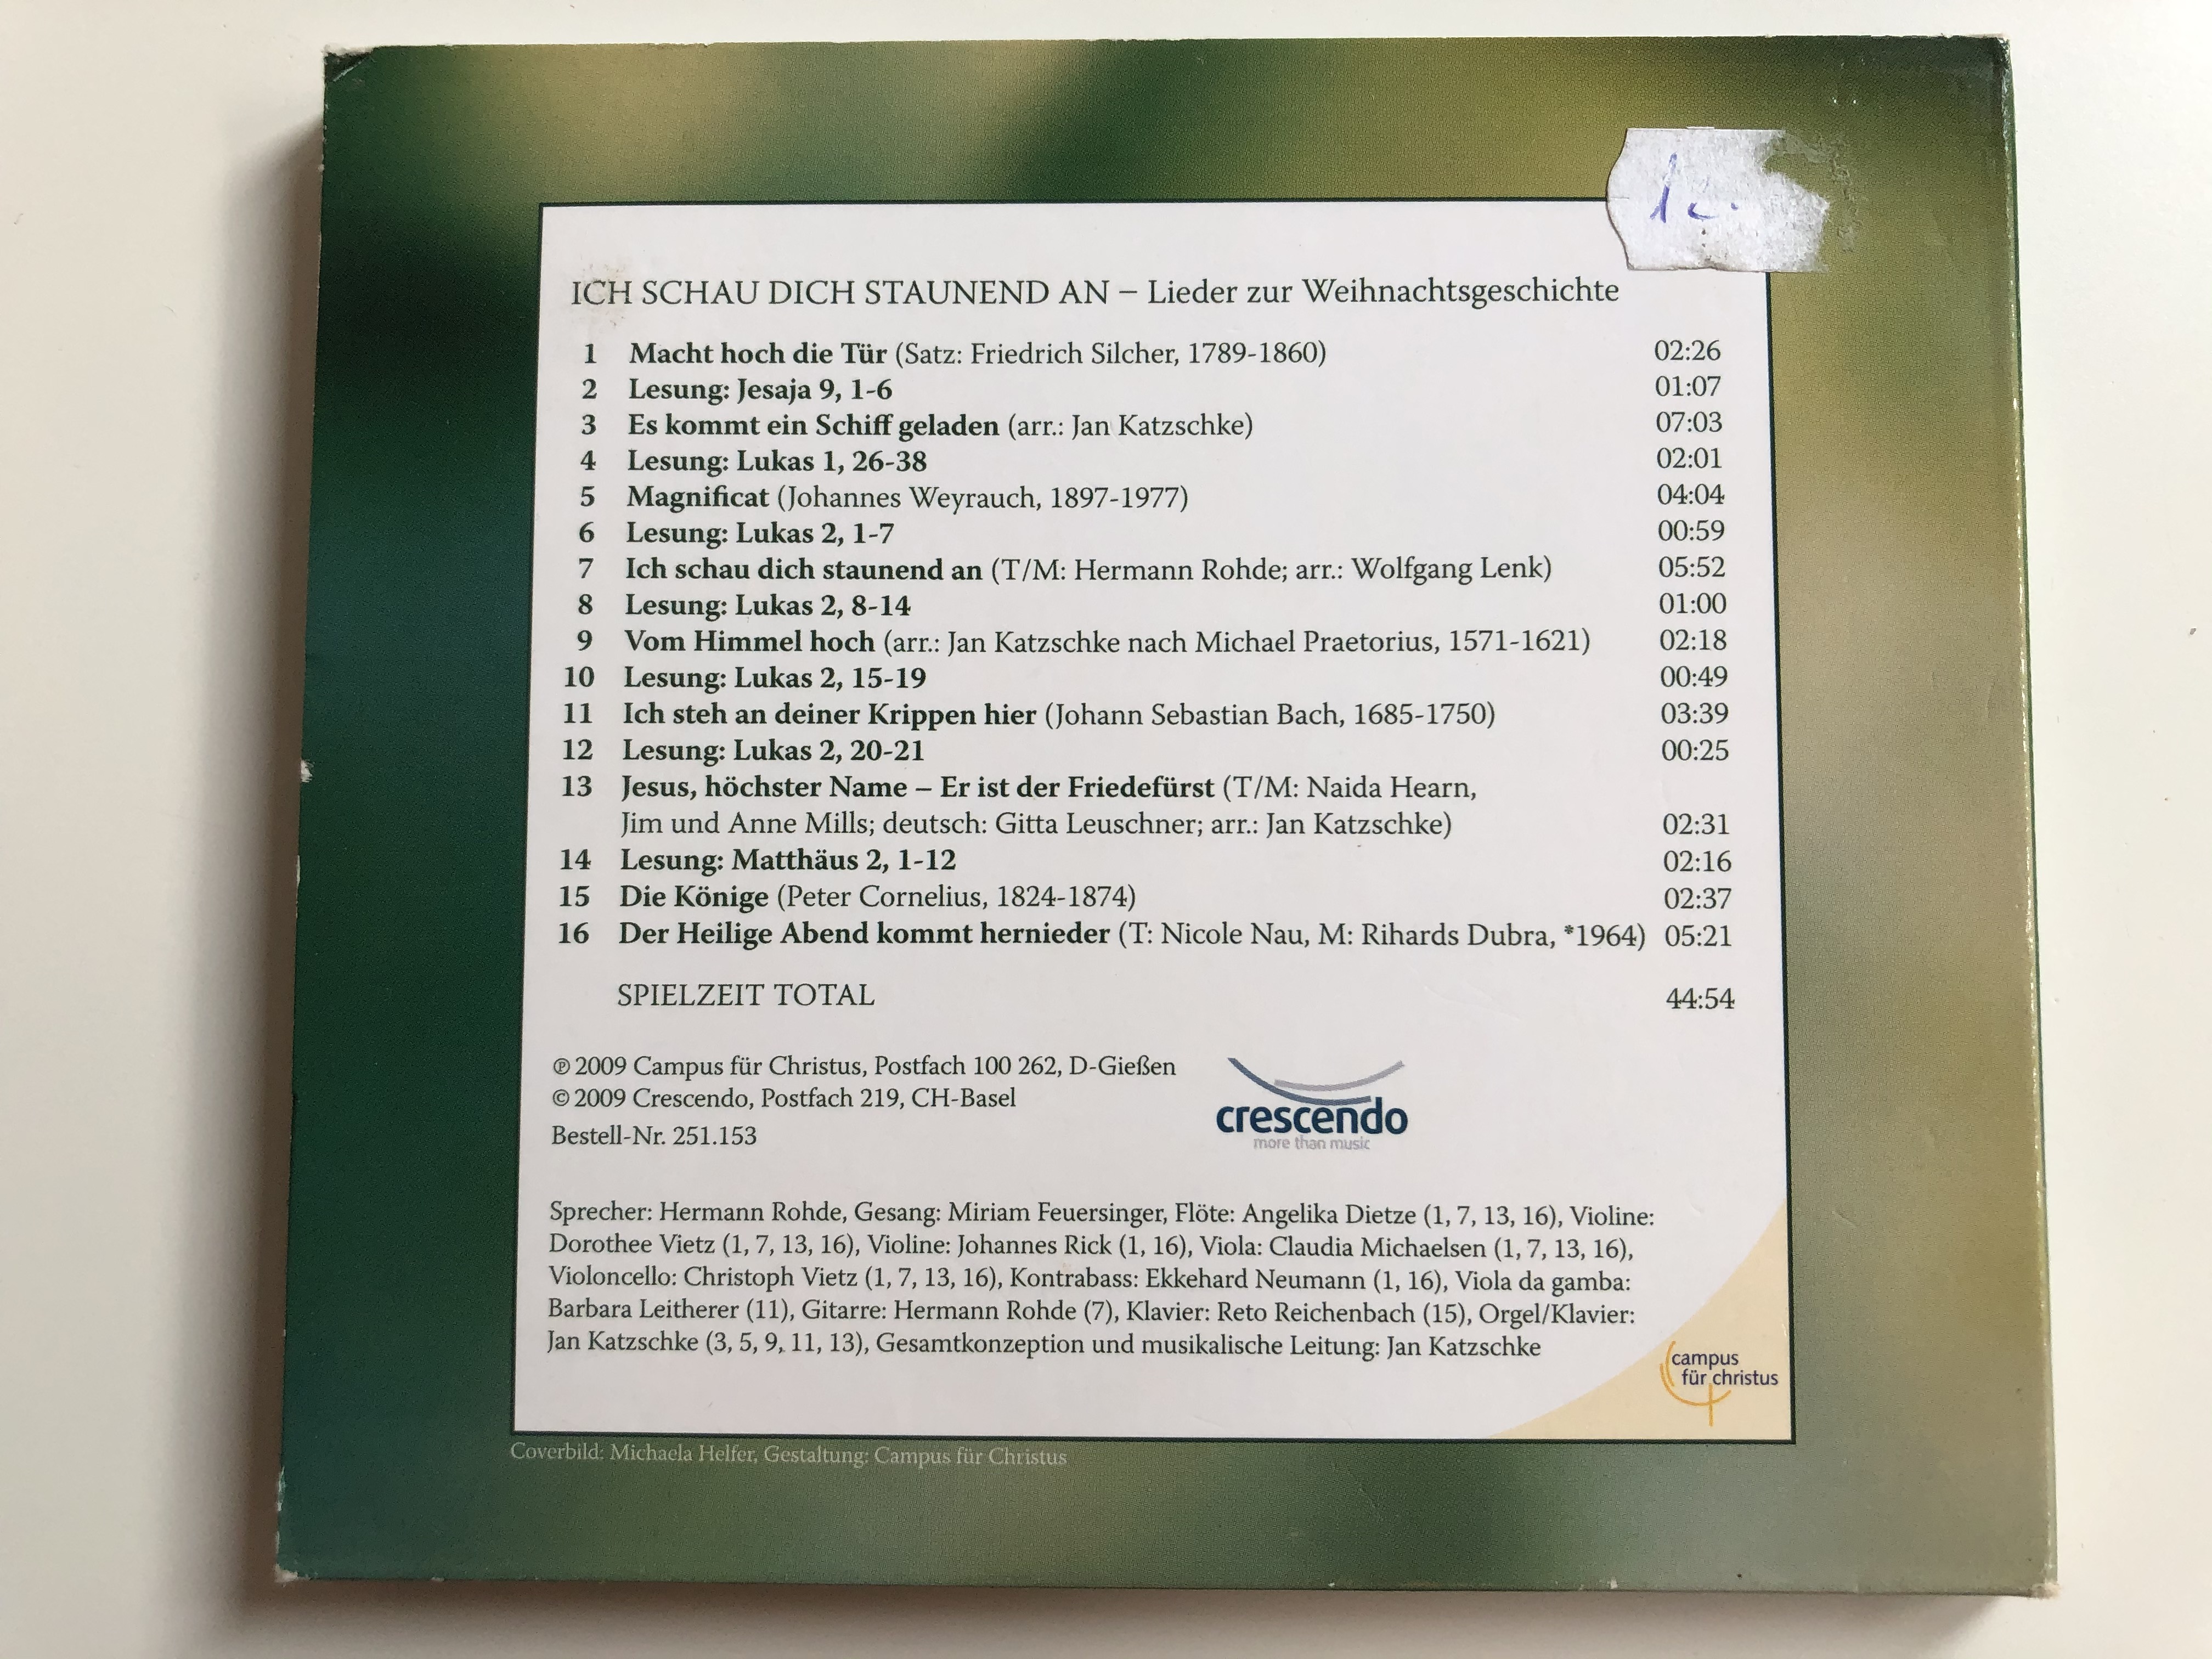 ich-schau-dich-staunend-an-lieder-zur-weihnachtsgeschichte-miriam-feuersinger-jan-katzschke-hermann-rohde-crescendo-ensemble-crescendo-audio-cd-2009-8-.jpg